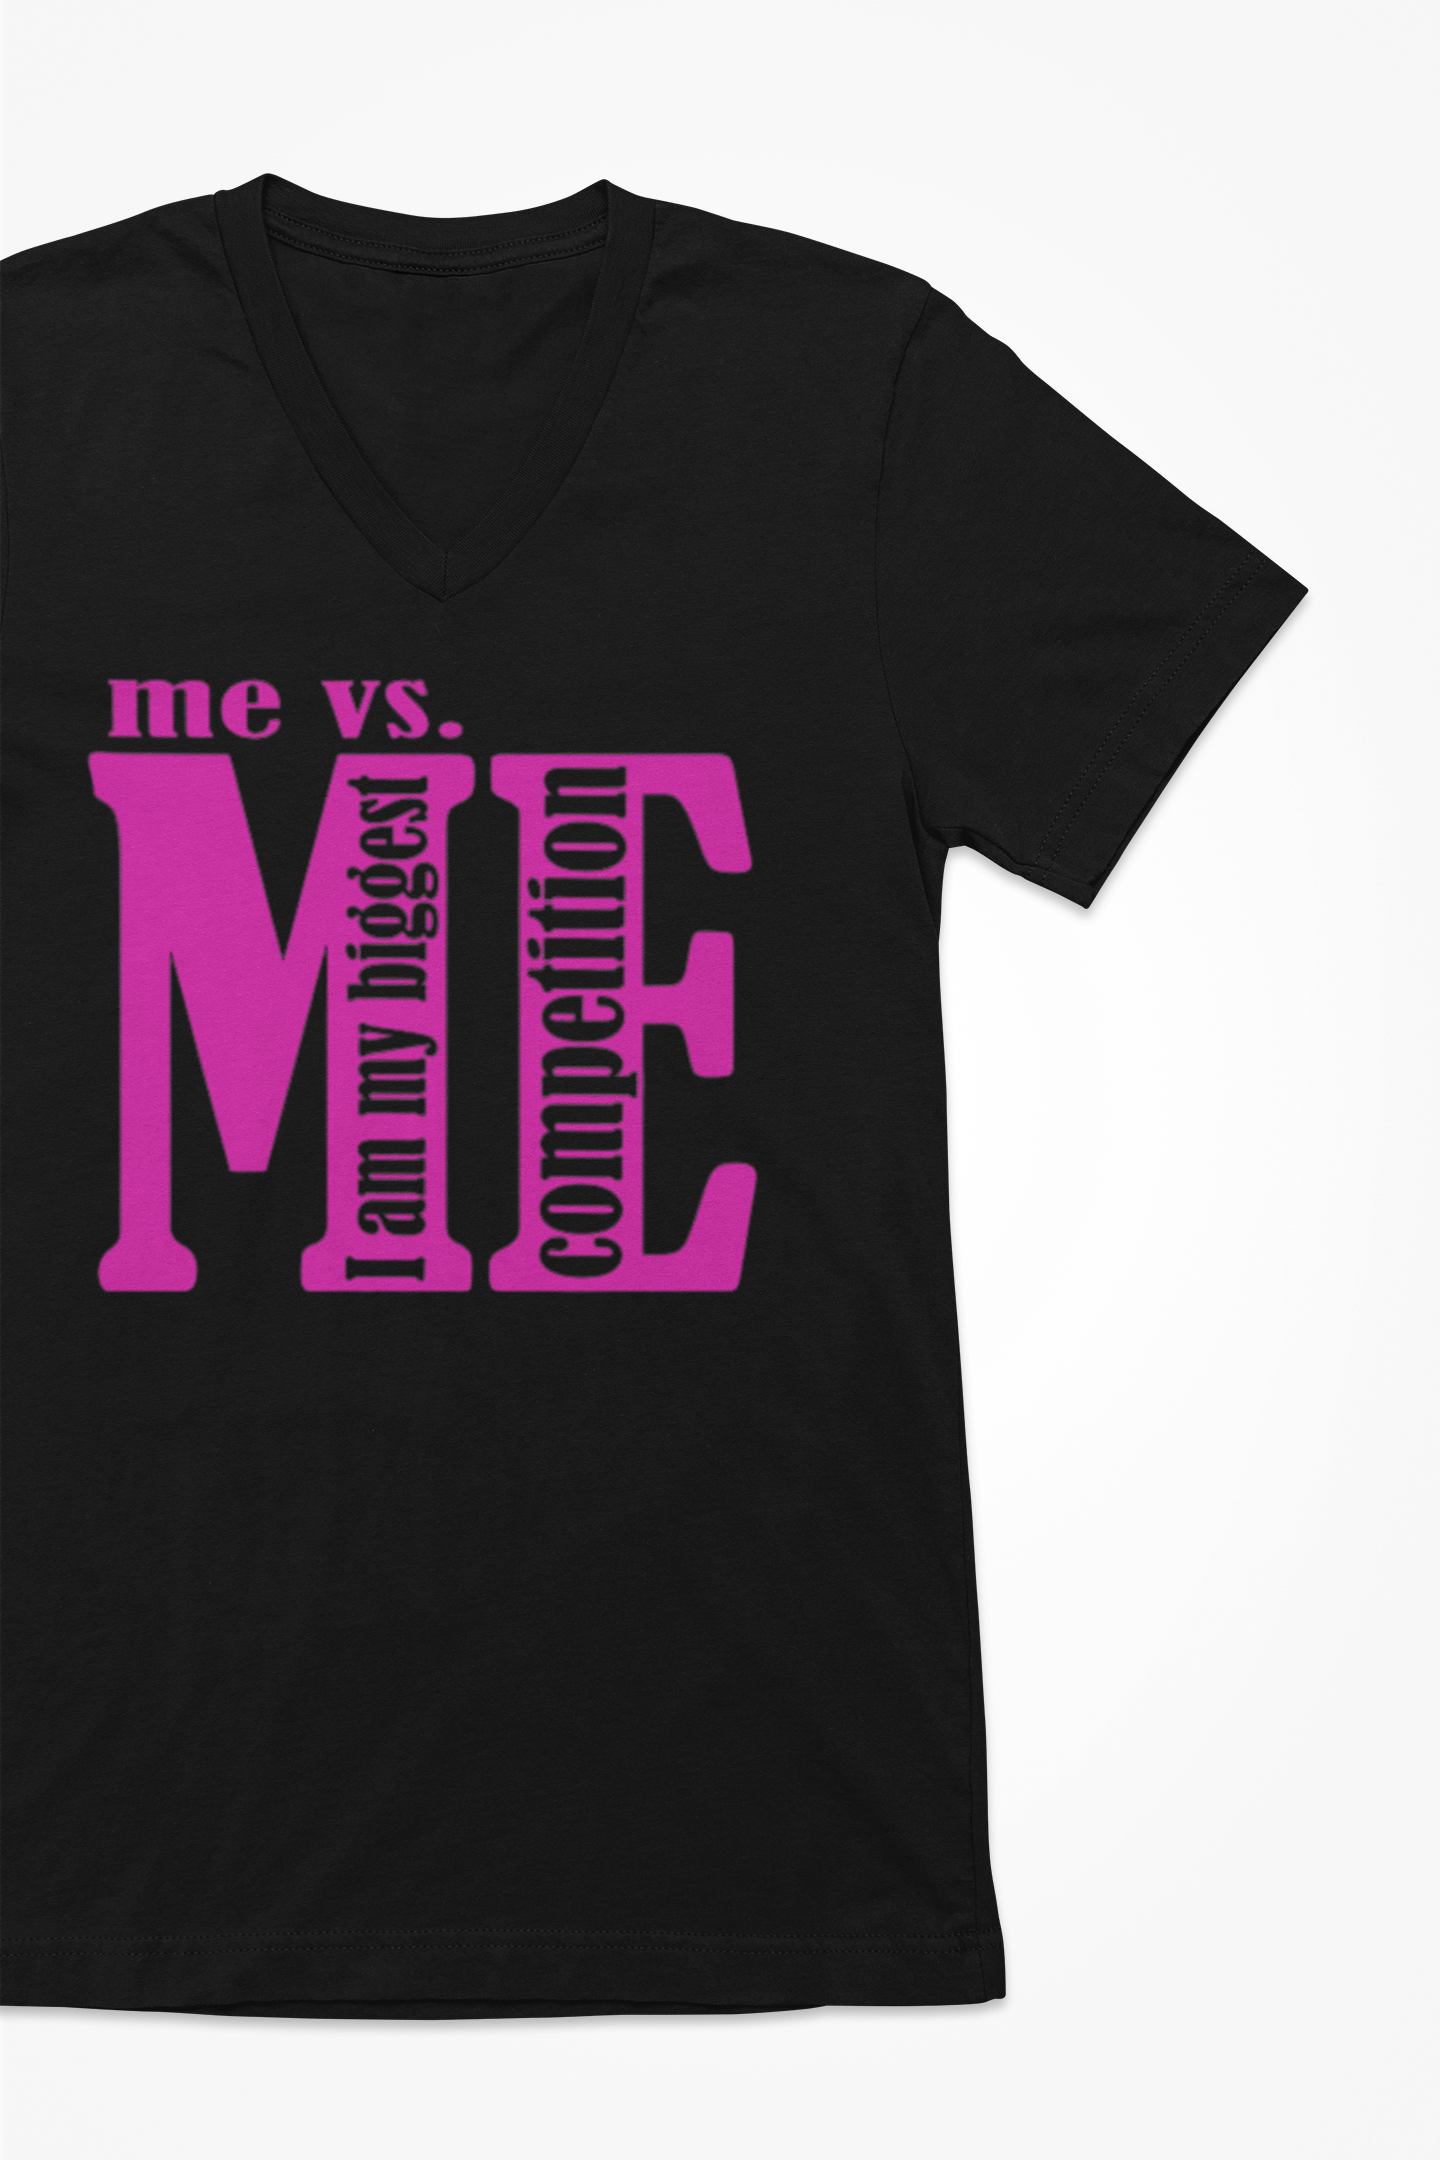 Me vs me T-Shirt